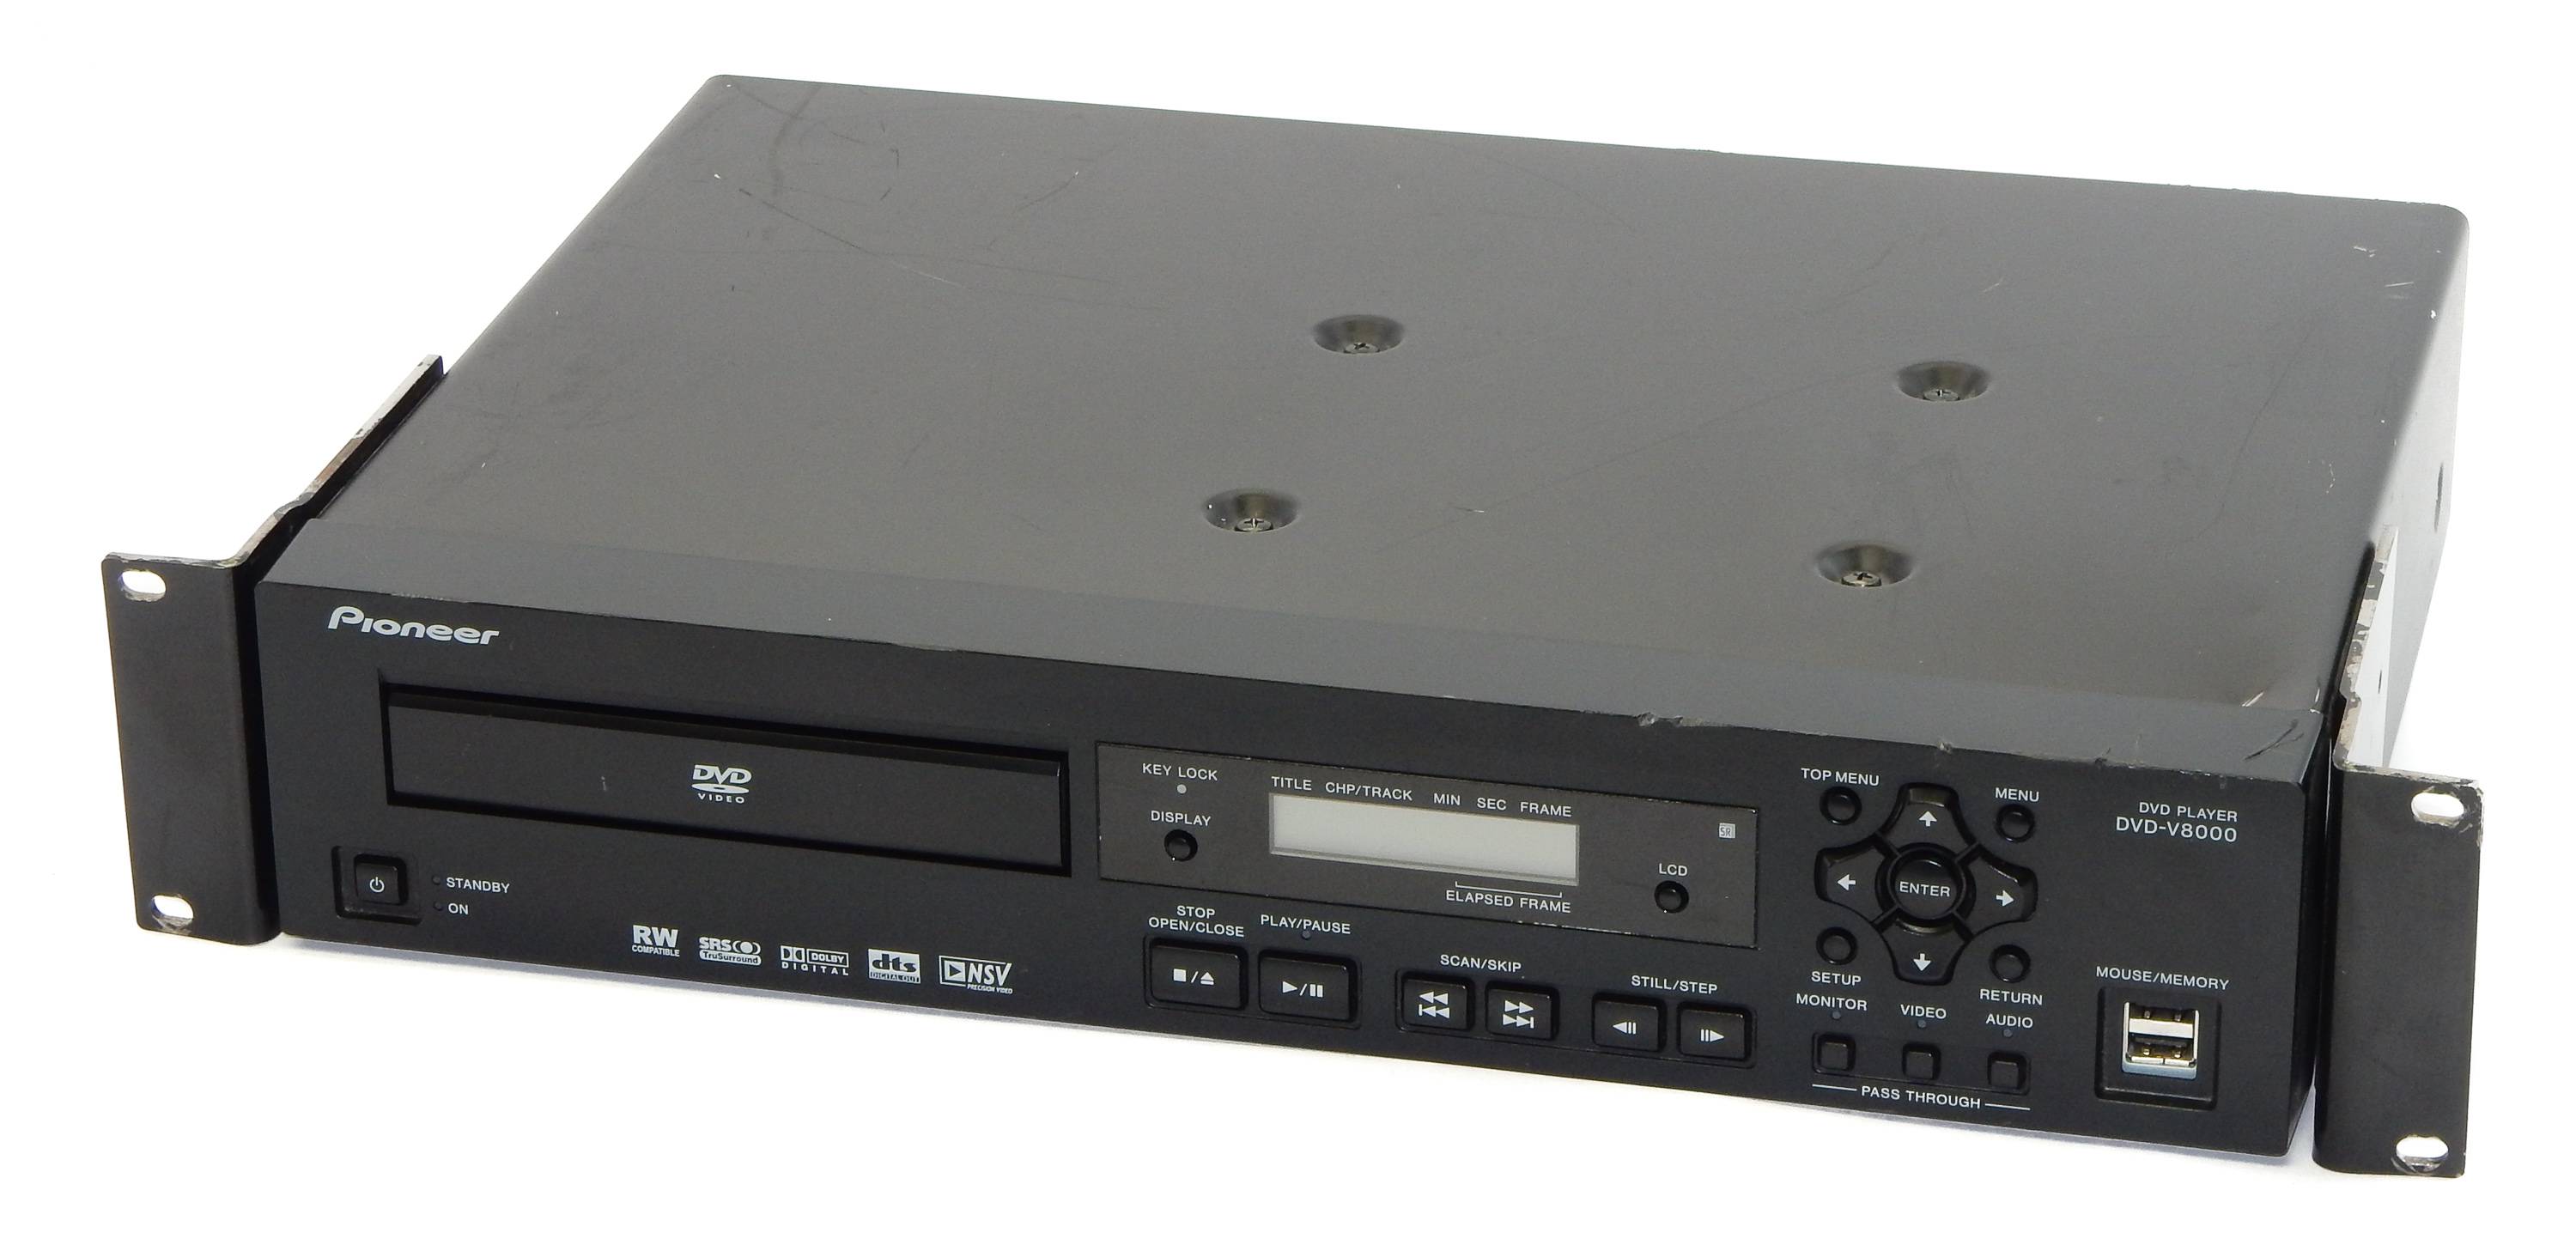 Pioneer DVD-V8000